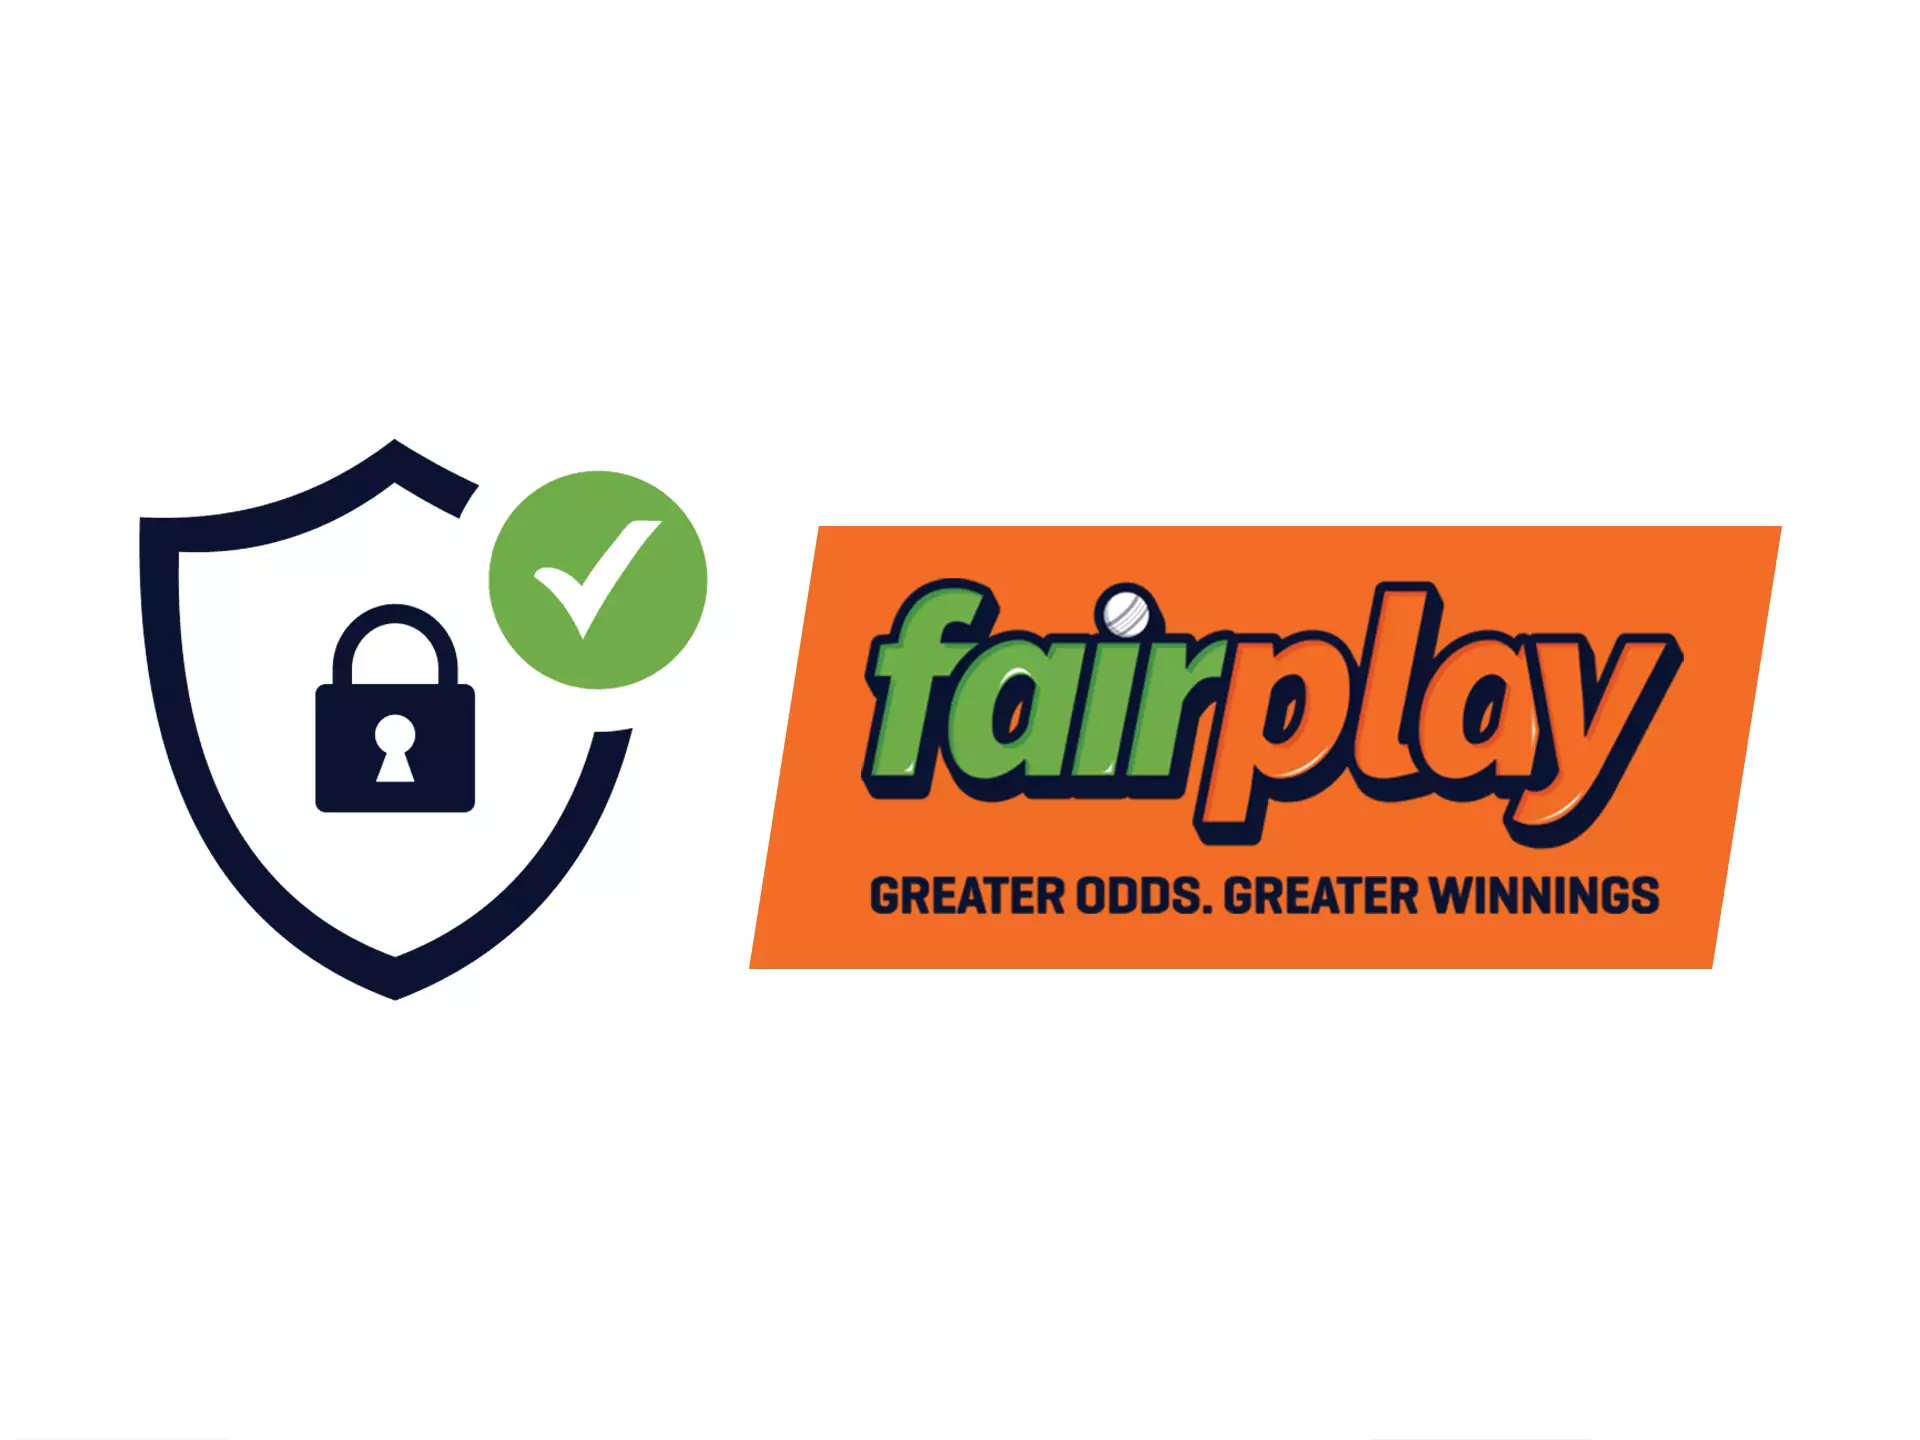 Fairplay उपयोगकर्ताओं के व्यक्तिगत डेटा को सुरक्षित रूप से सुरक्षित रखता है।